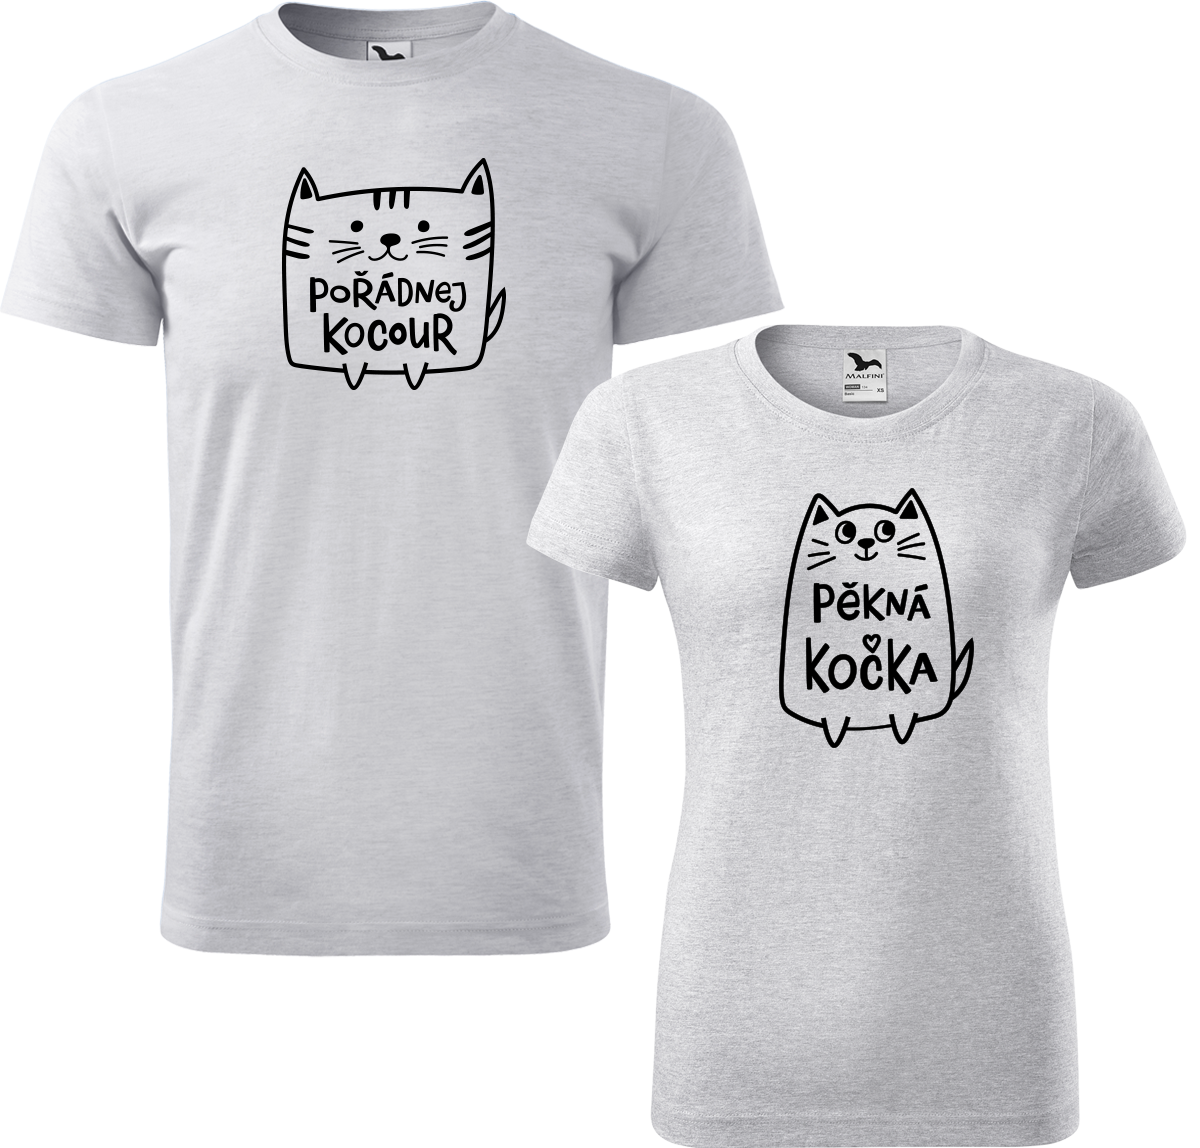 Trička pro páry - Pořádnej kocour a pěkná kočka Barva: Světle šedý melír (03), Velikost dámské tričko: S, Velikost pánské tričko: 3XL